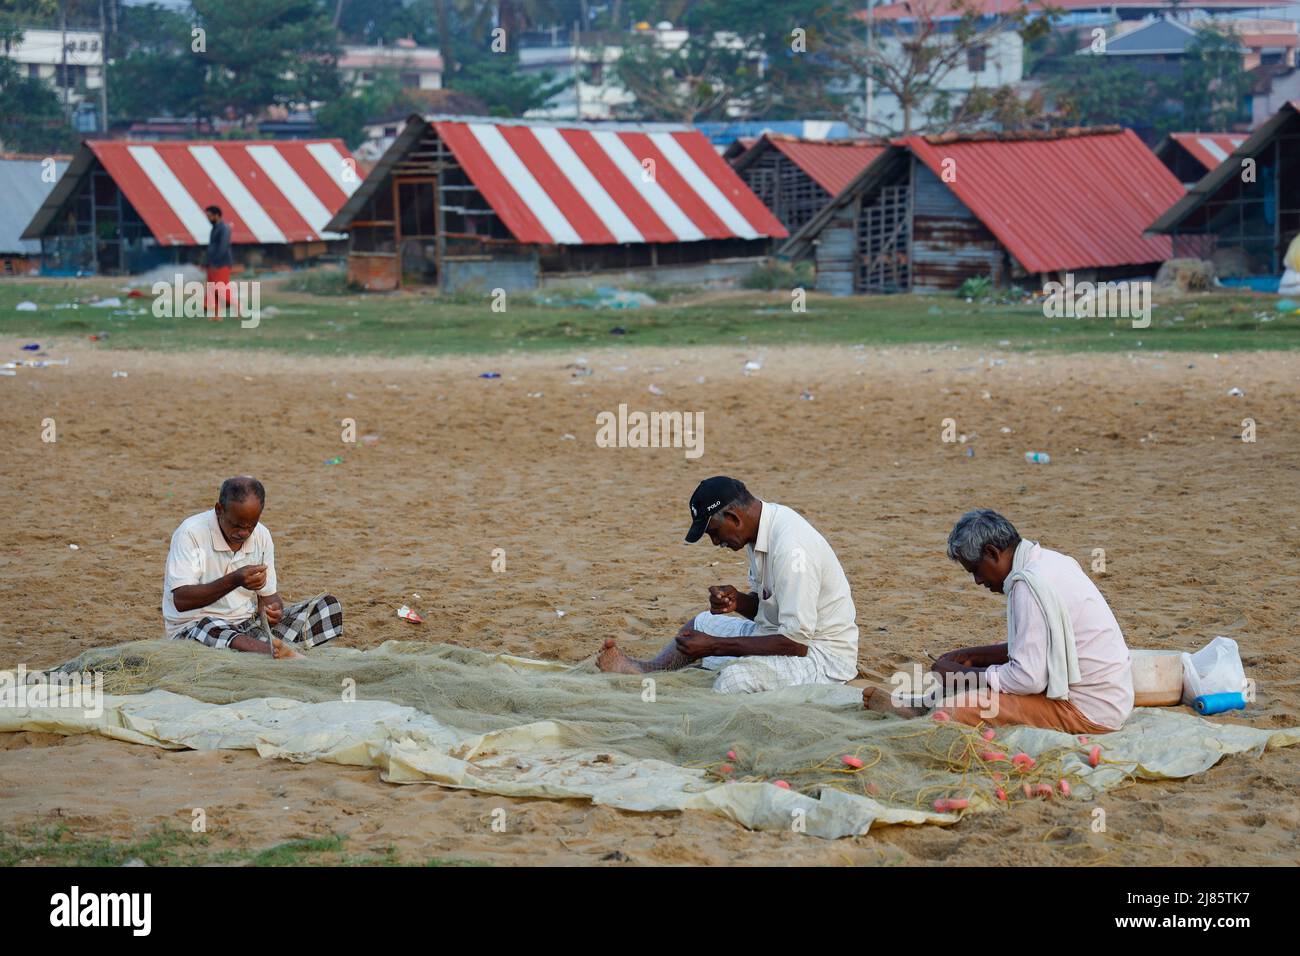 Drei Fischer, die am Strand sitzen und ihre Fischernetze ausbessern, Tangassery, Kerala, Indien. Stockfoto